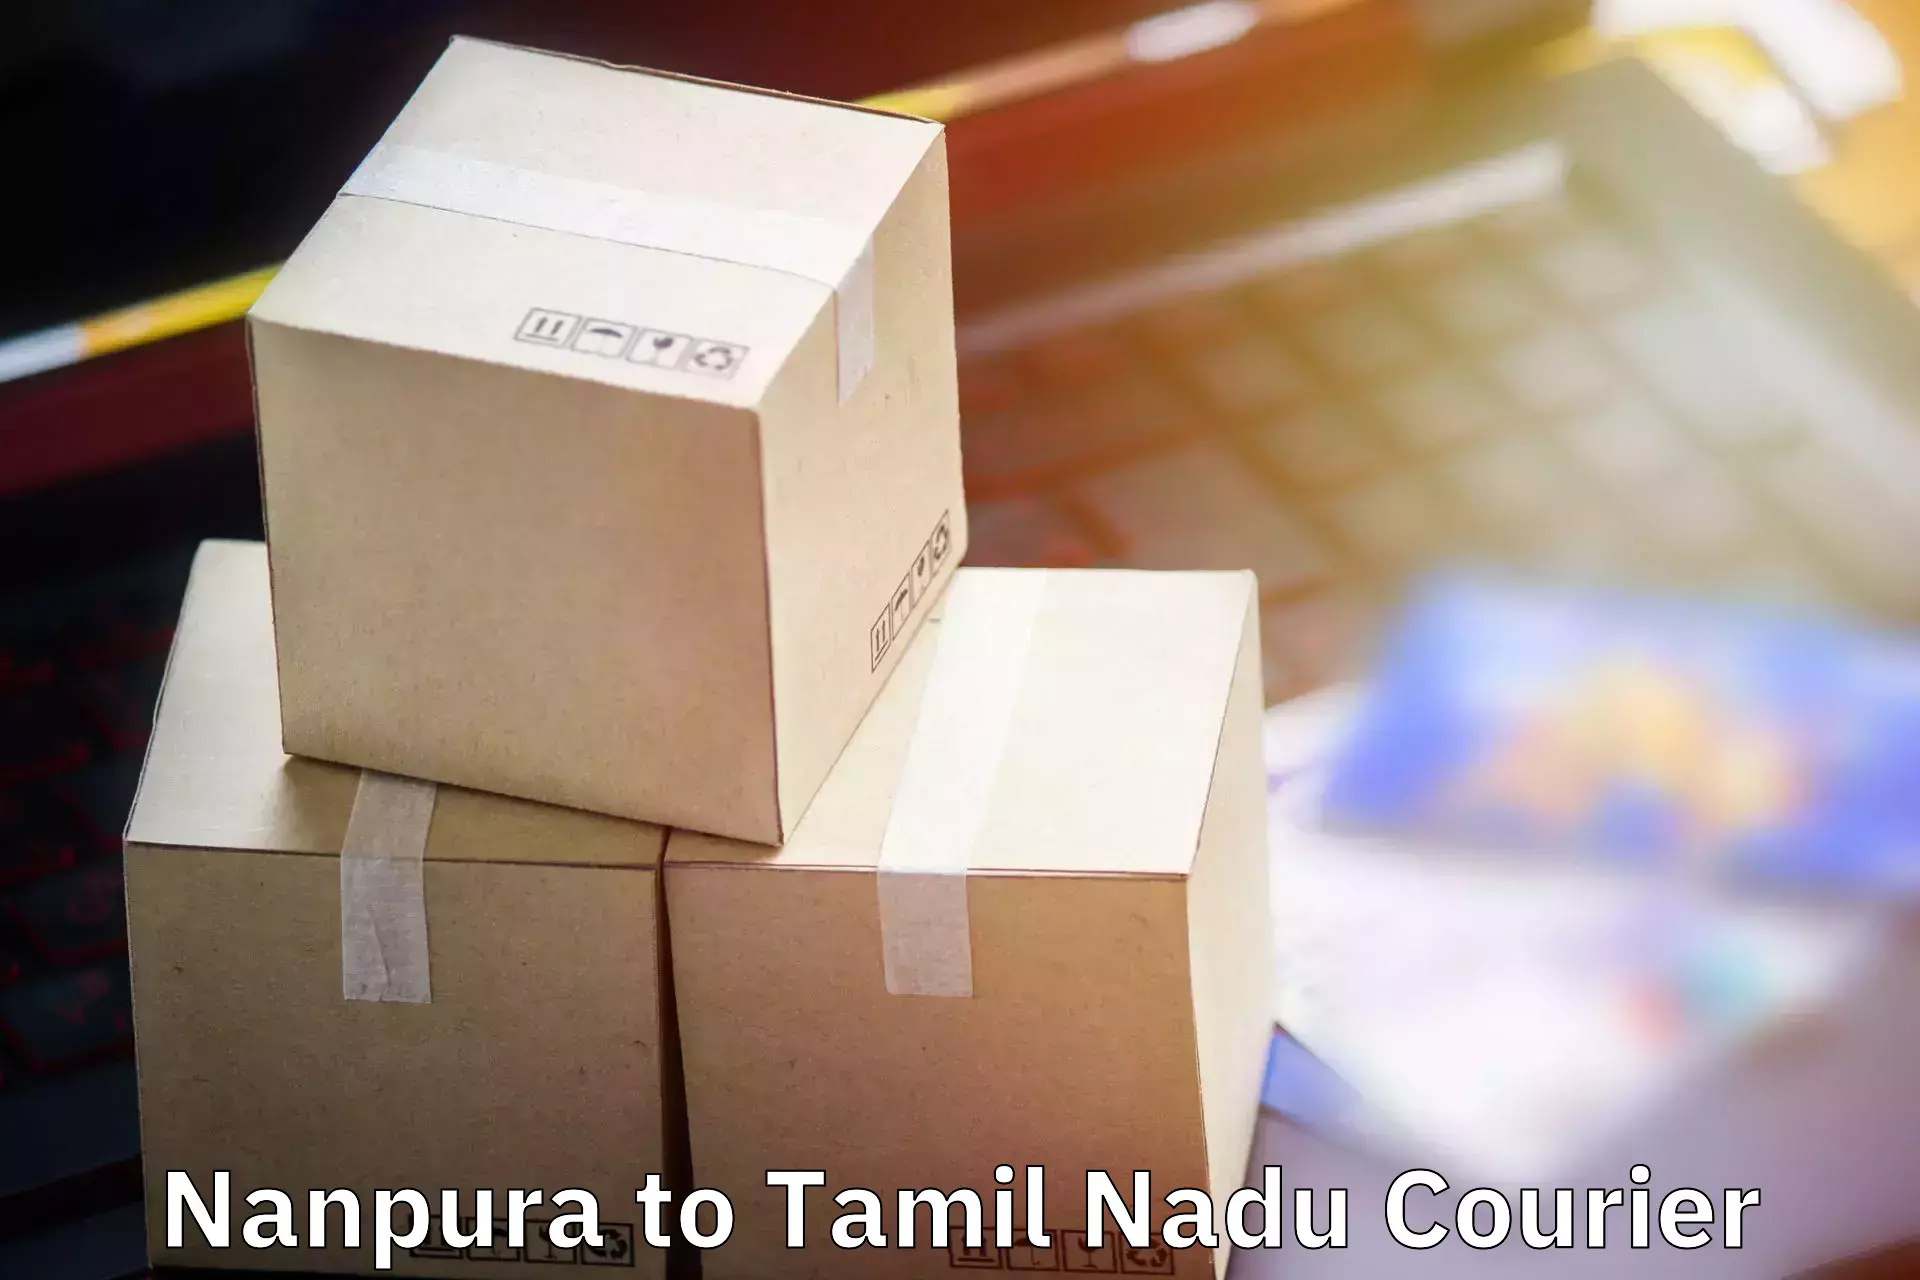 Baggage shipping service Nanpura to Ambur